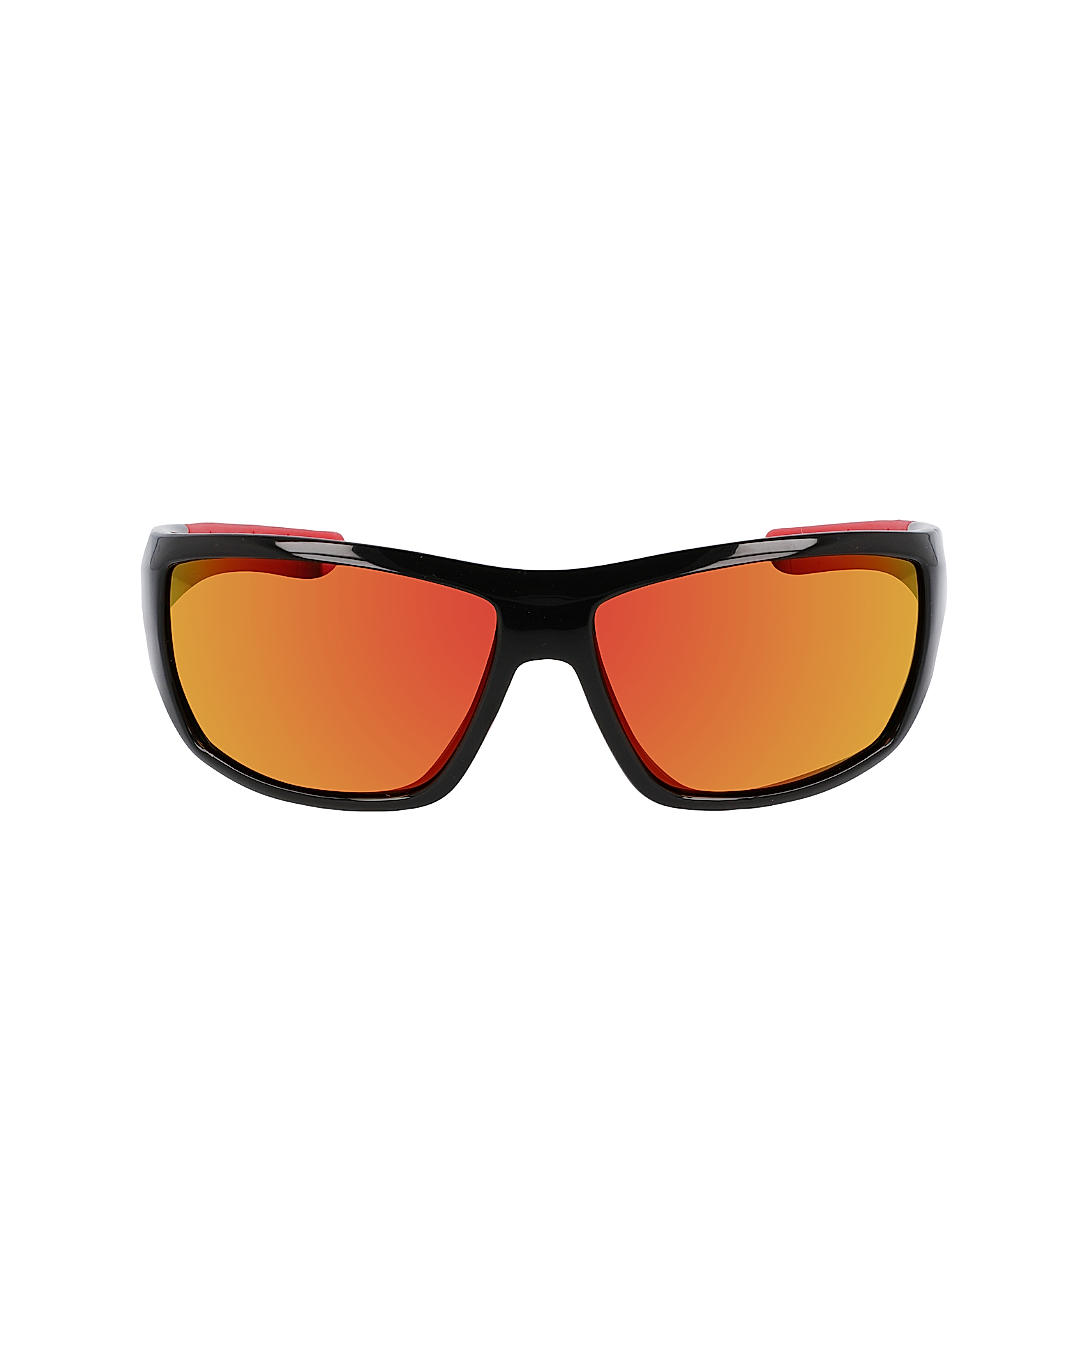 Buy Columbia Men Black Utilizer Sunglasses Online at Adventuras